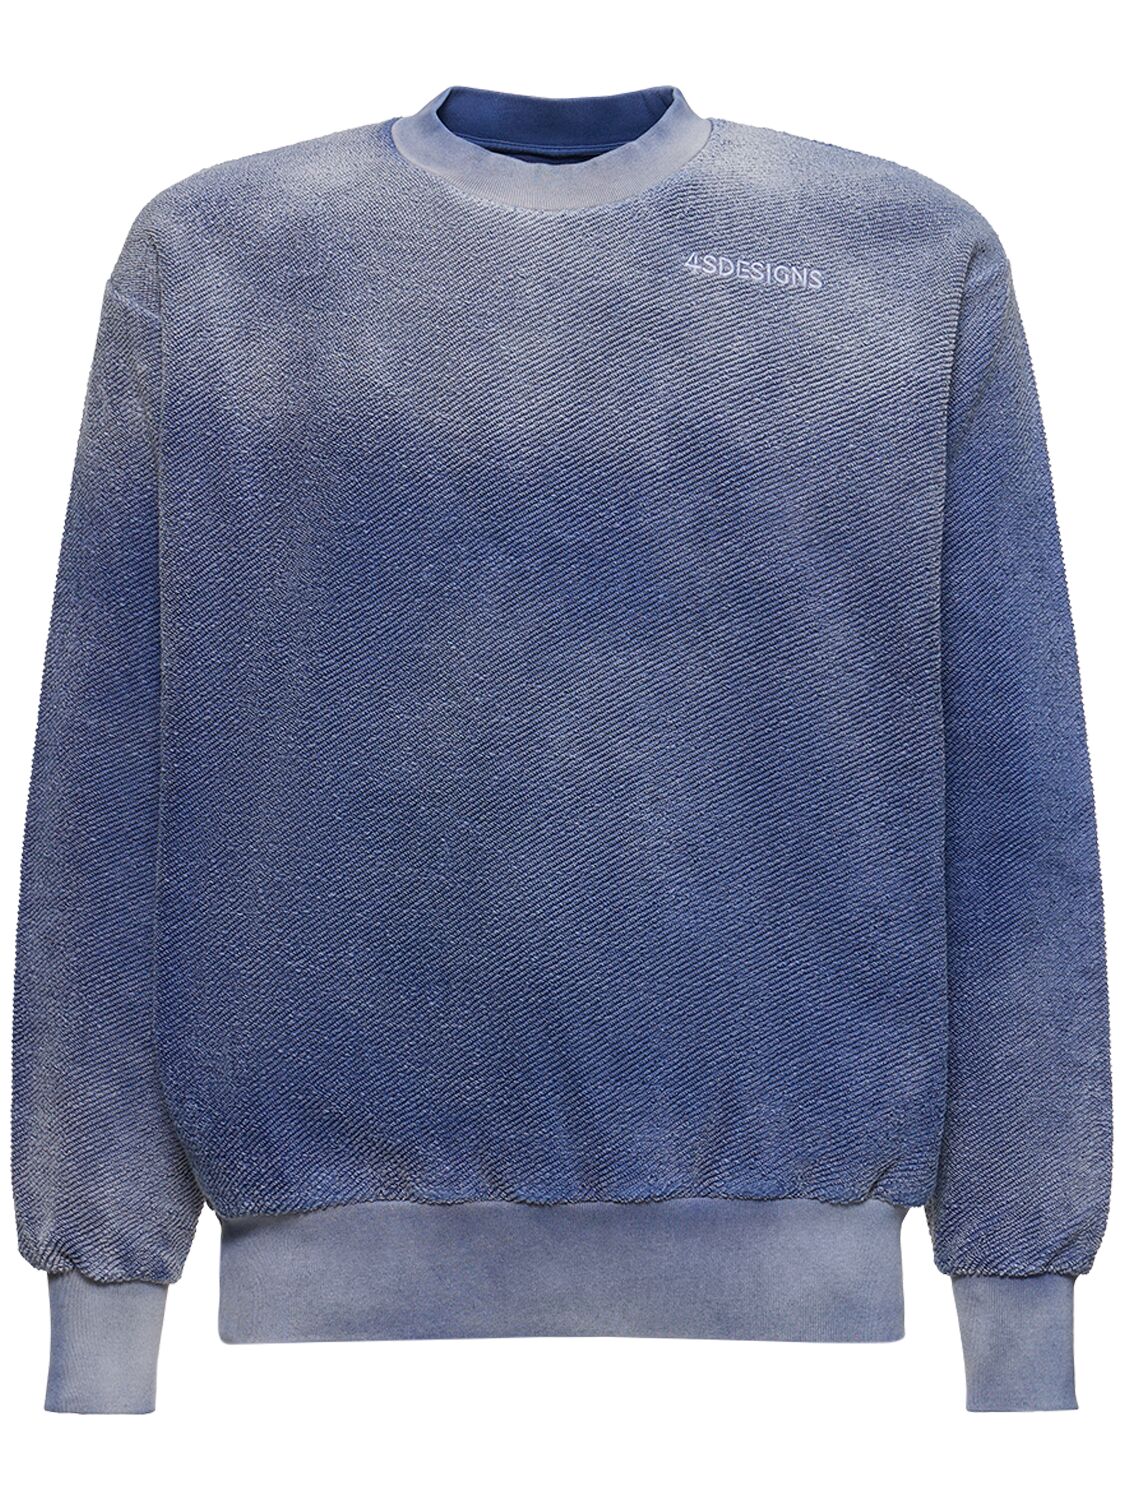 4sdesigns Rev Crewneck Sweatshirt In Blue